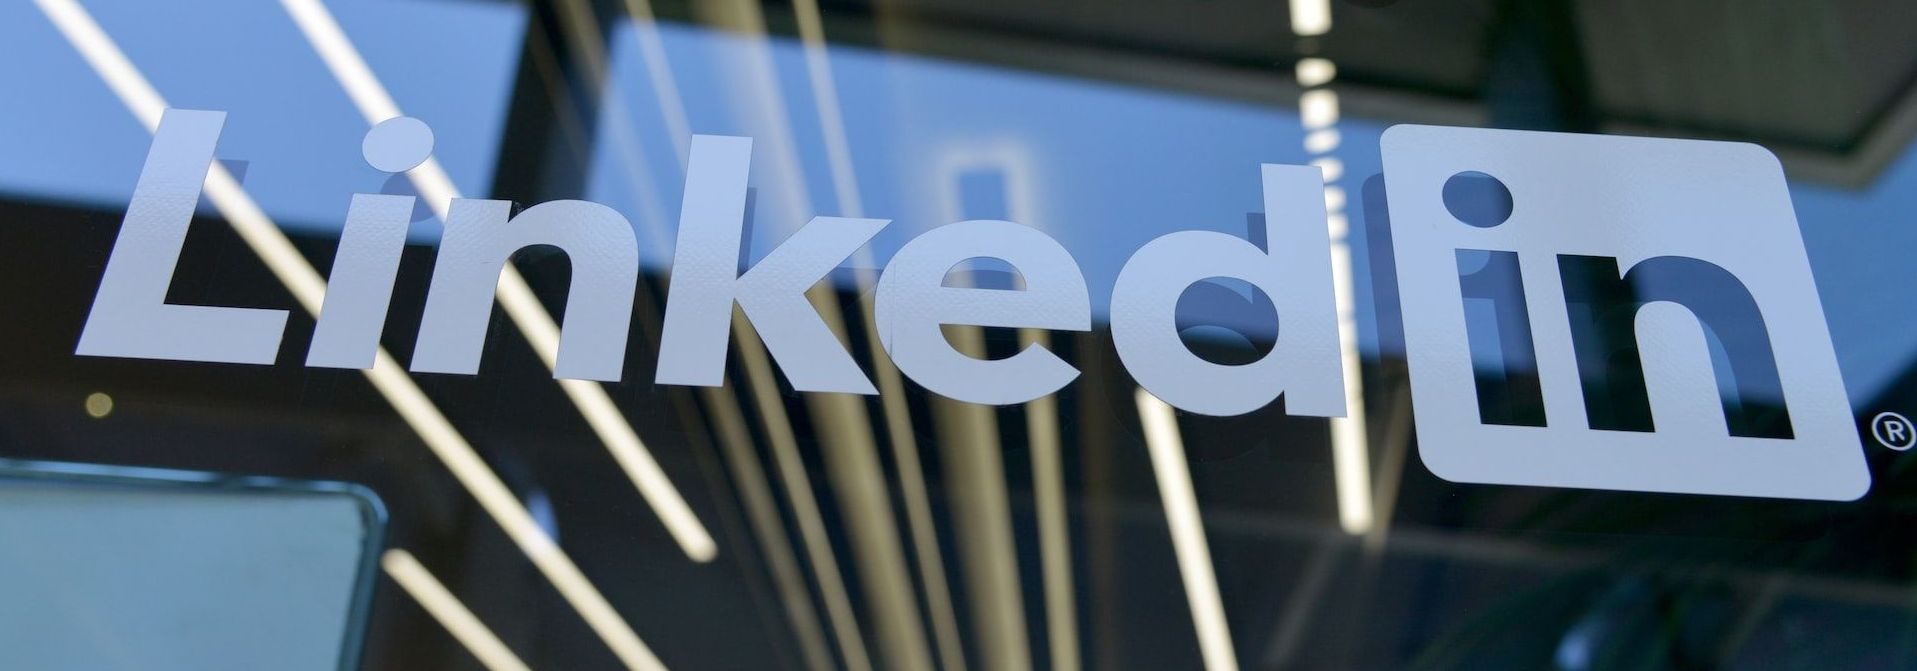 Leads genereren via LinkedIn - Alles wat je moet weten